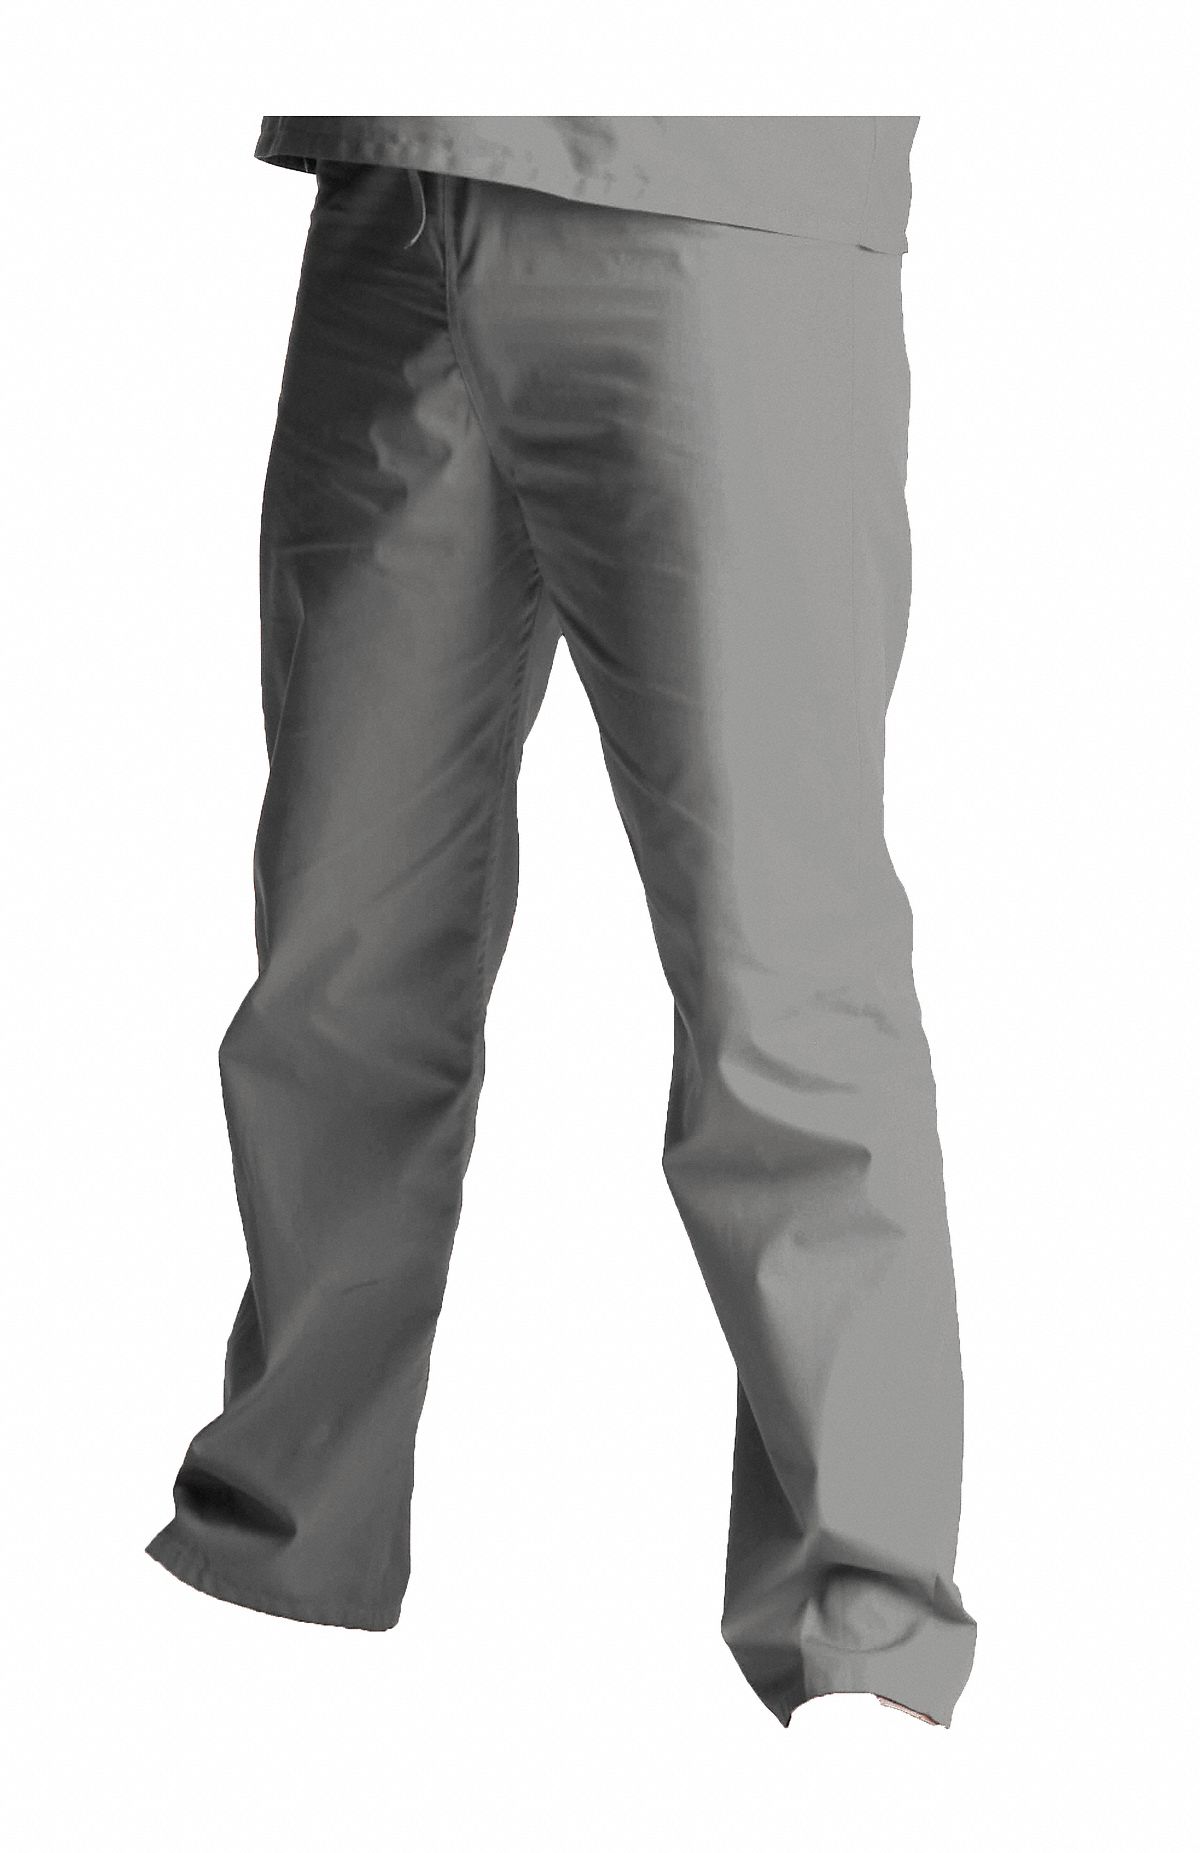 SCRUB ZONE Gray Scrub Pants, L, Polyester/Cotton, Fits Waist Size 35 to ...